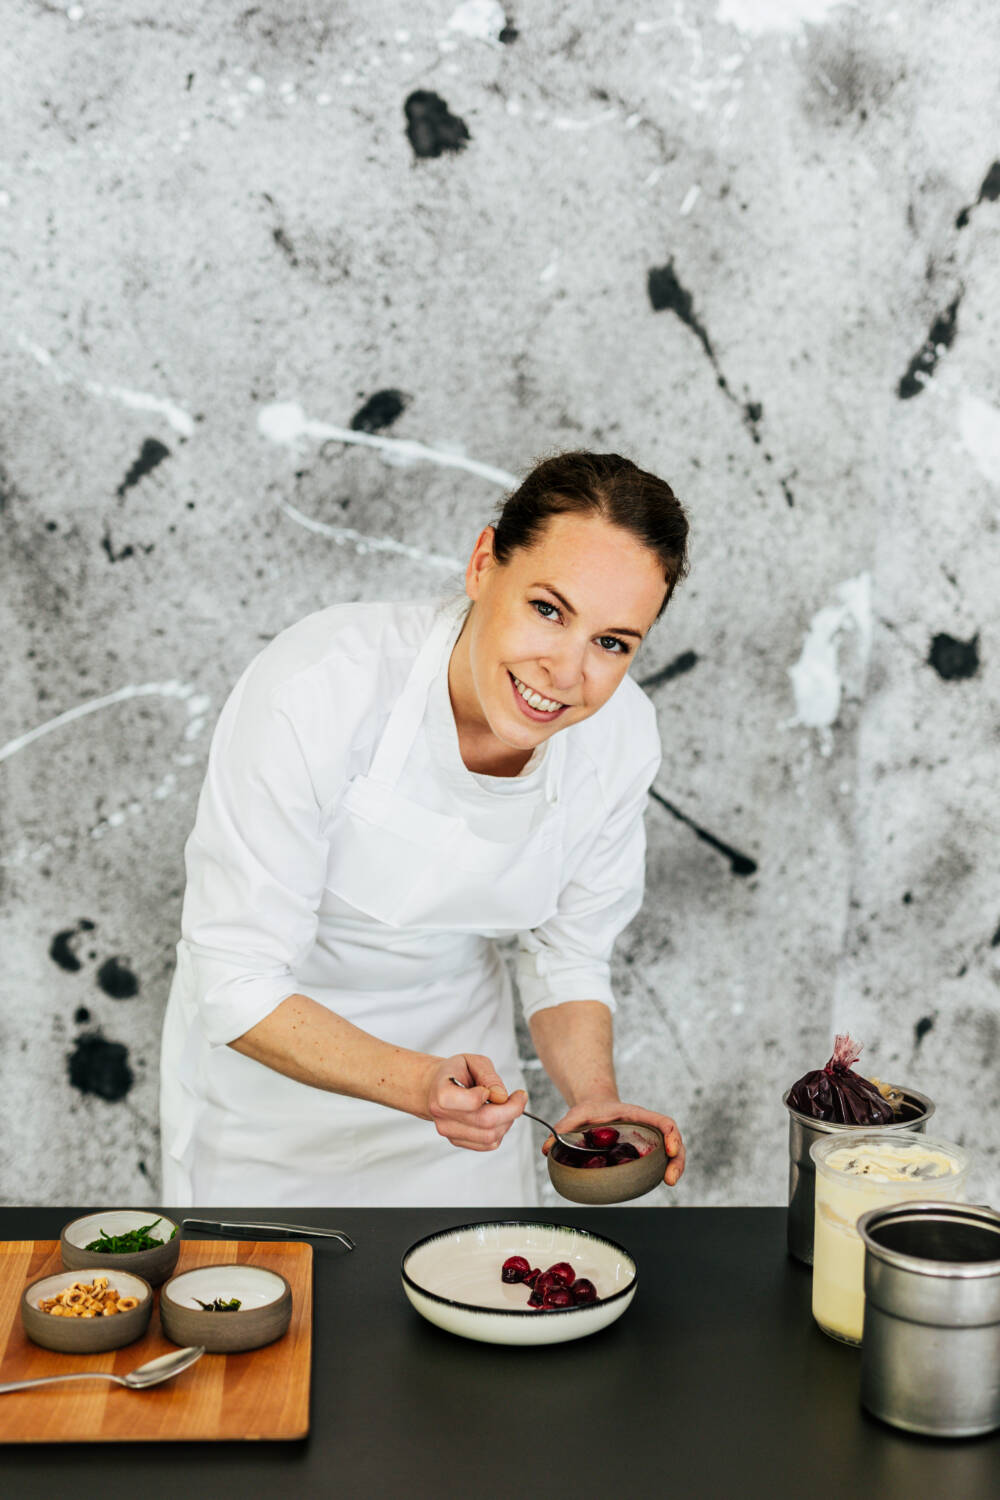 Friederike Binder ist Souschefin im Drachen und hat das ausgefallene Dessert konzipiert / ©Julia Schumacher